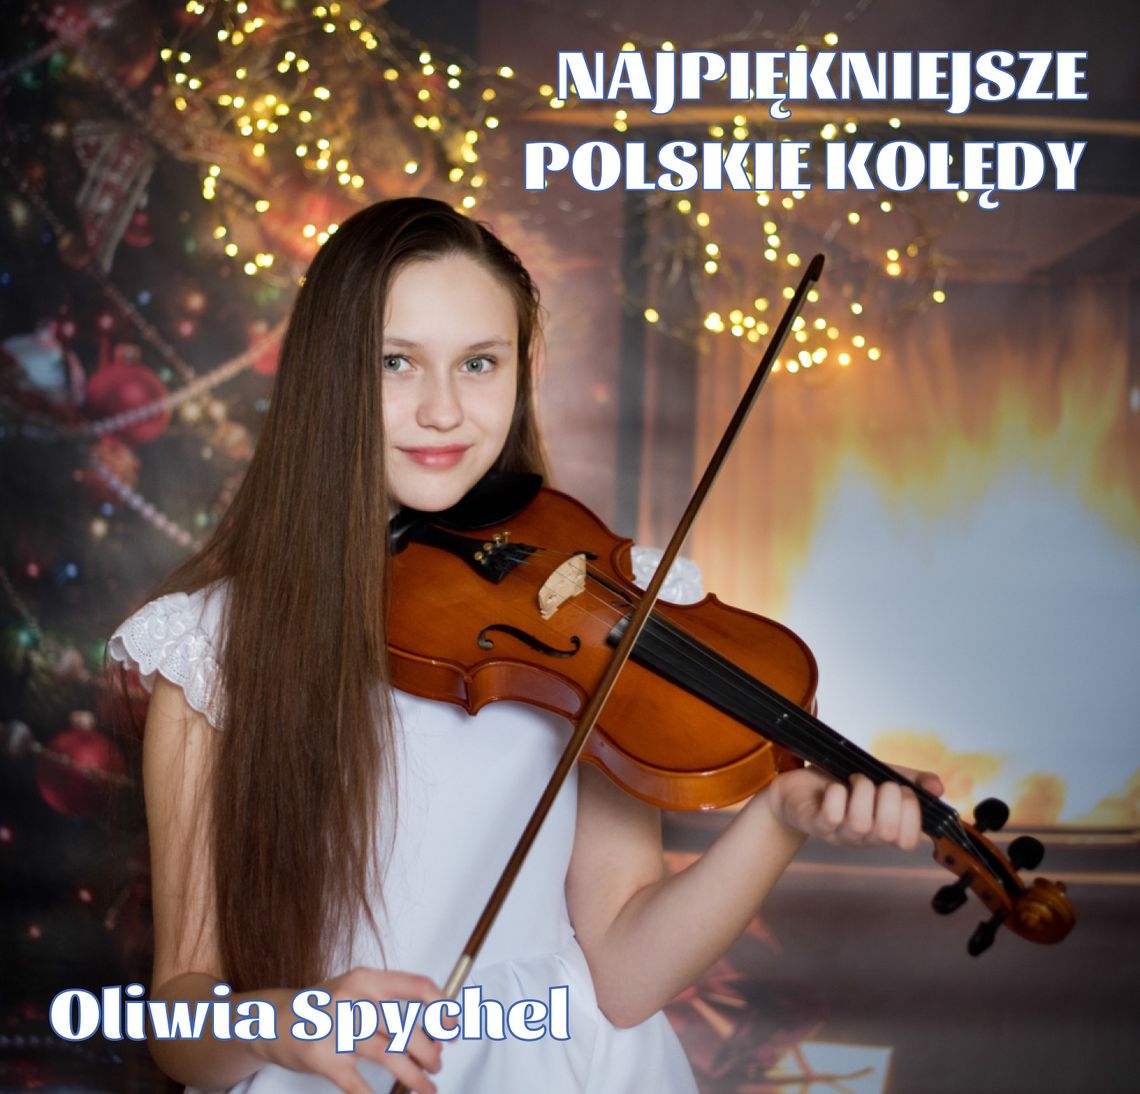 Debiutancka płyta Oliwii Spychel